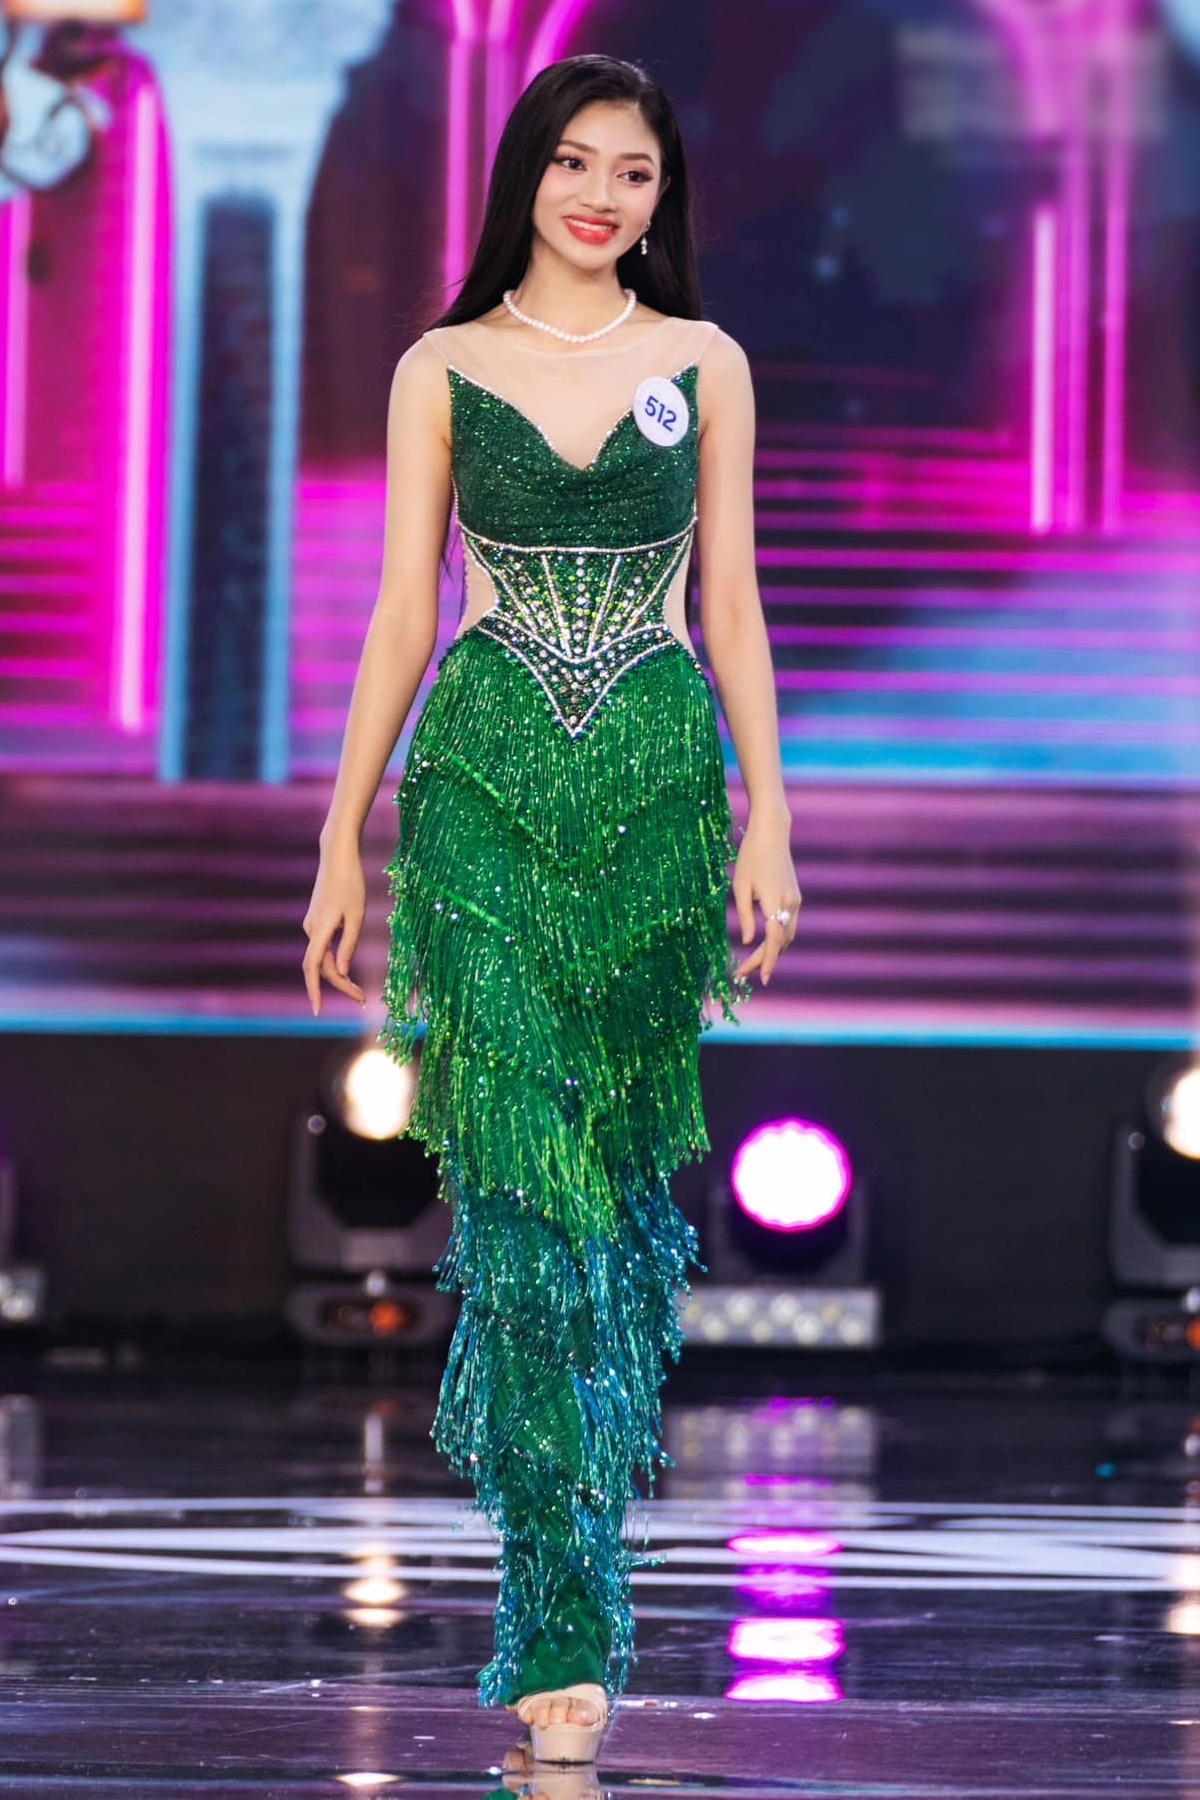 Á hậu 2 Miss World Vietnam 2023 Huỳnh Minh Kiên: Thiếu thốn tình yêu từ bố, mẹ làm giúp việc mưu sinh - Ảnh 7.